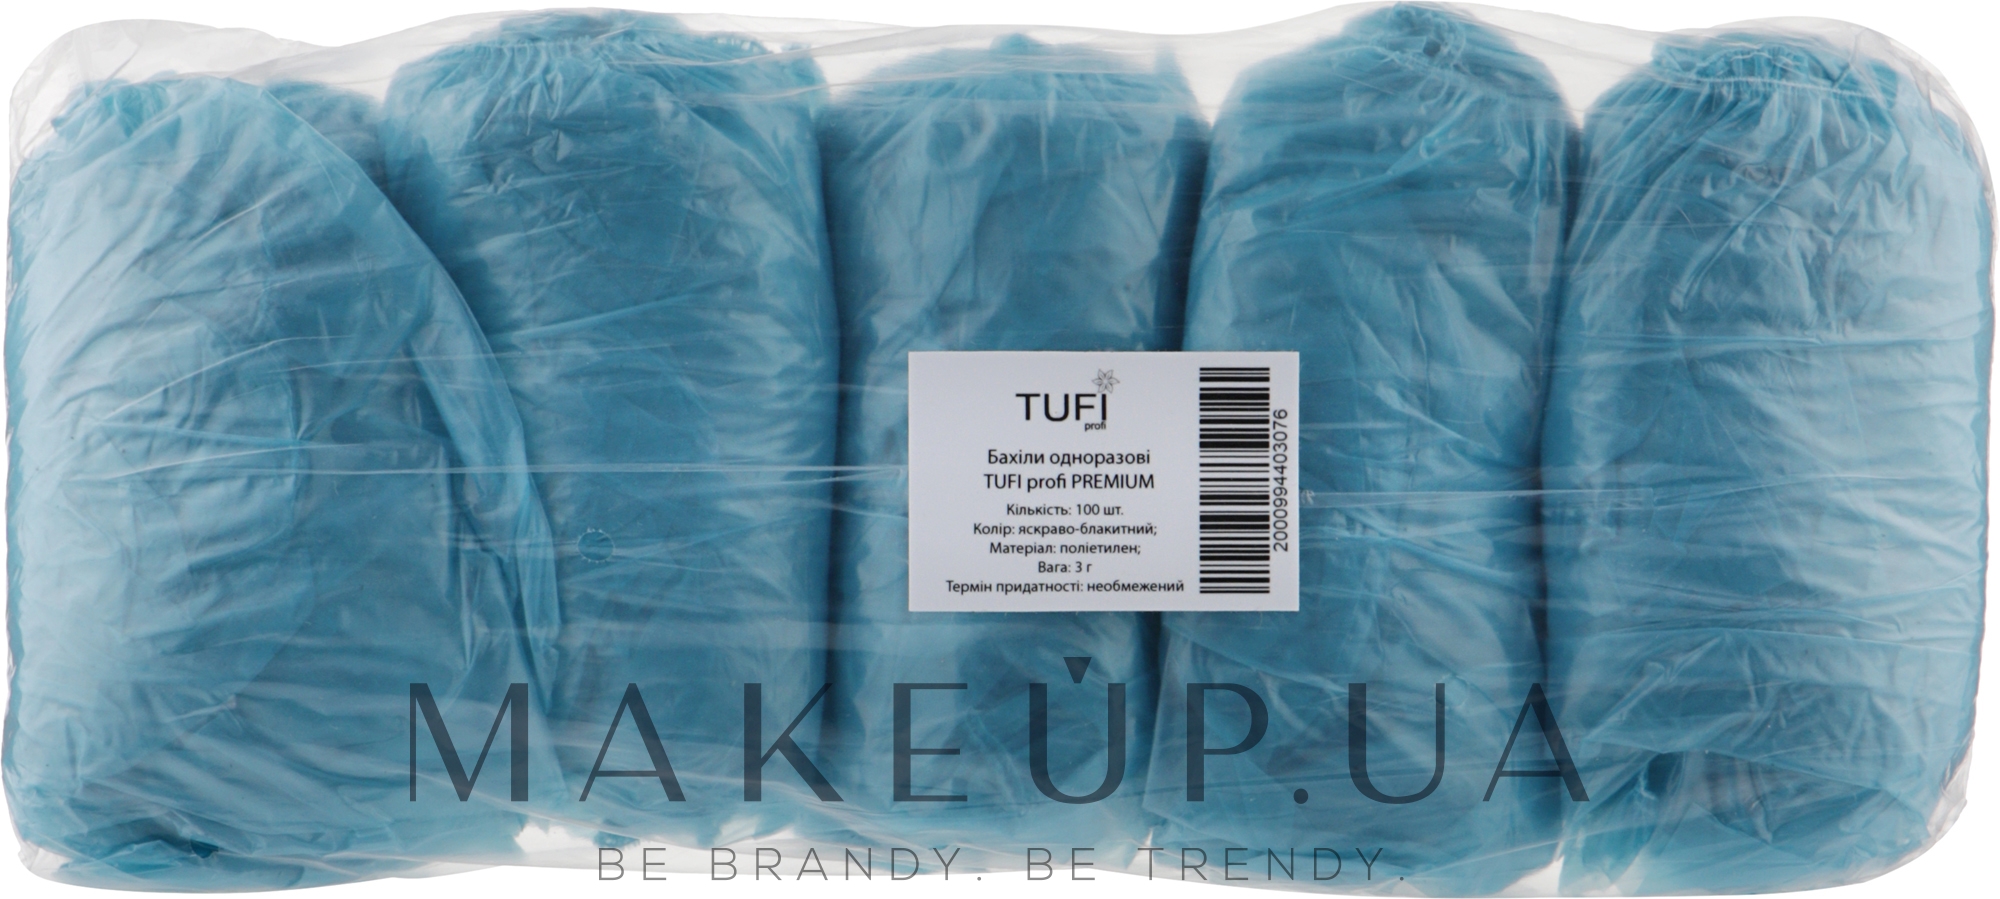 Бахіли одноразові, 3 г яскраво-блакитні, 100 шт. - Tuffi Proffi Premium — фото 100шт